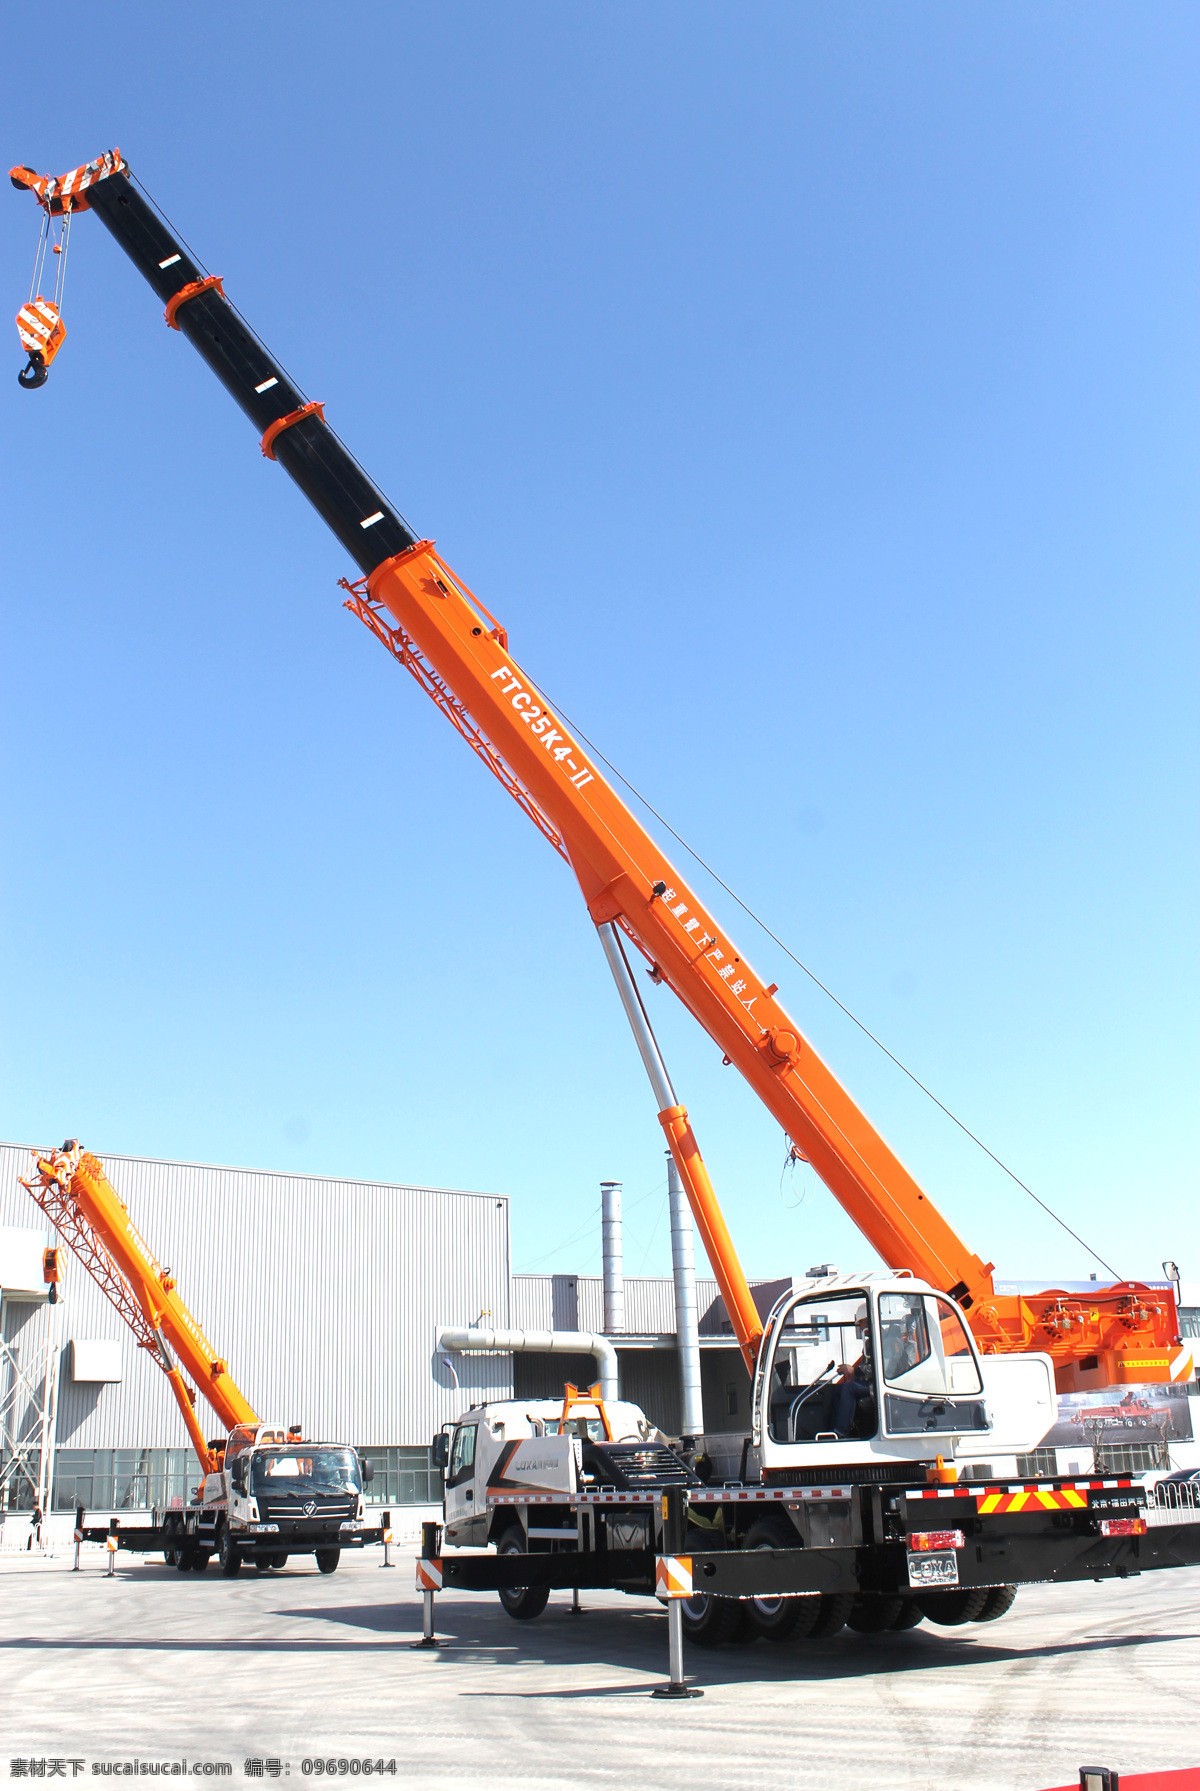 雷 萨 重机 产品系列 雷萨重机 起重机 水泥车 起重设备 起重机械 起重运输机械 工业生产 现代科技 白色